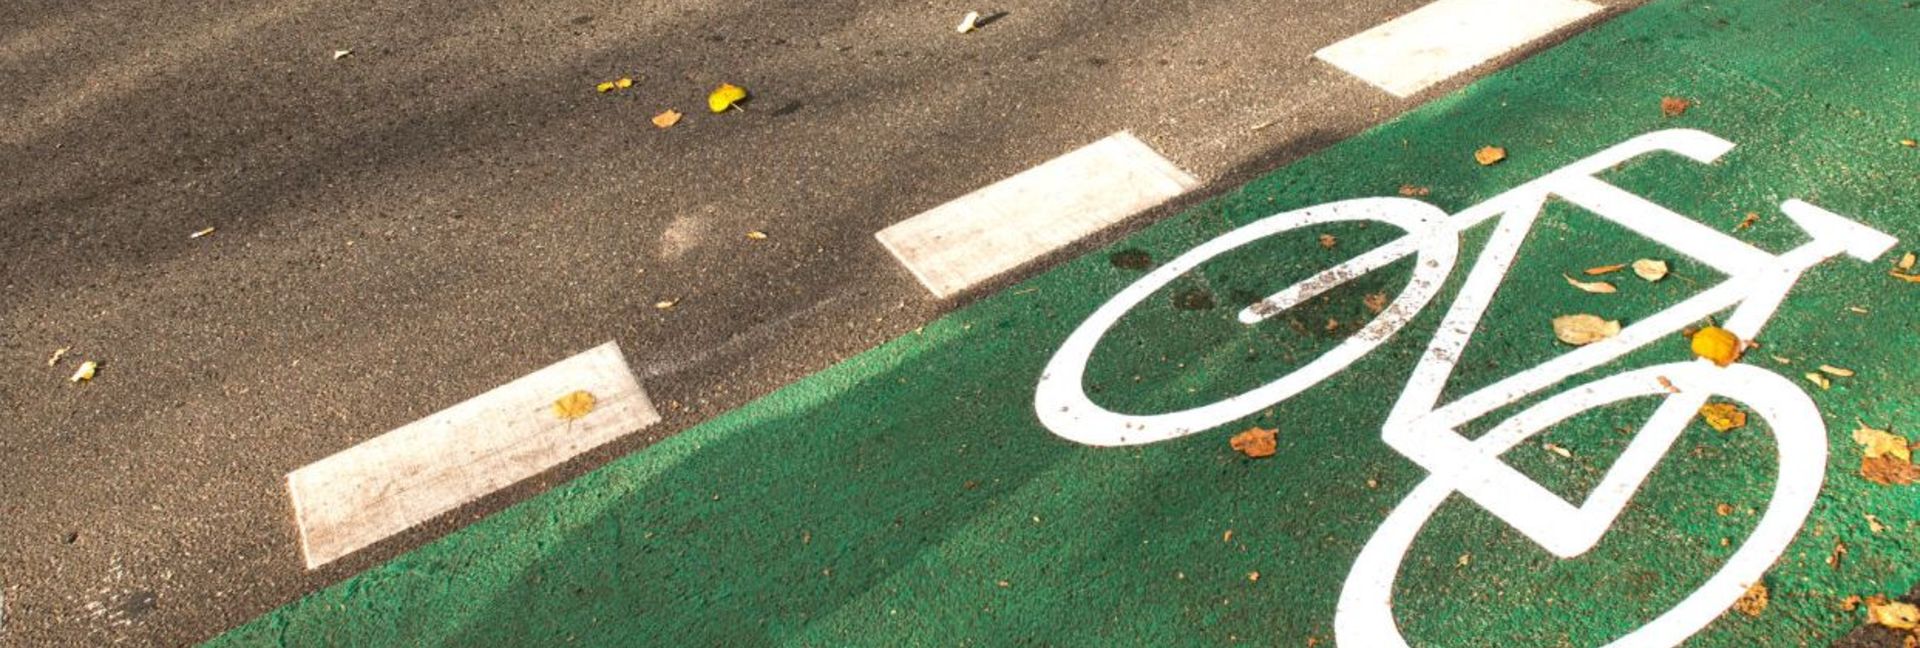 Grüner Radweg mit weißem Fahrradsymbol Berlin